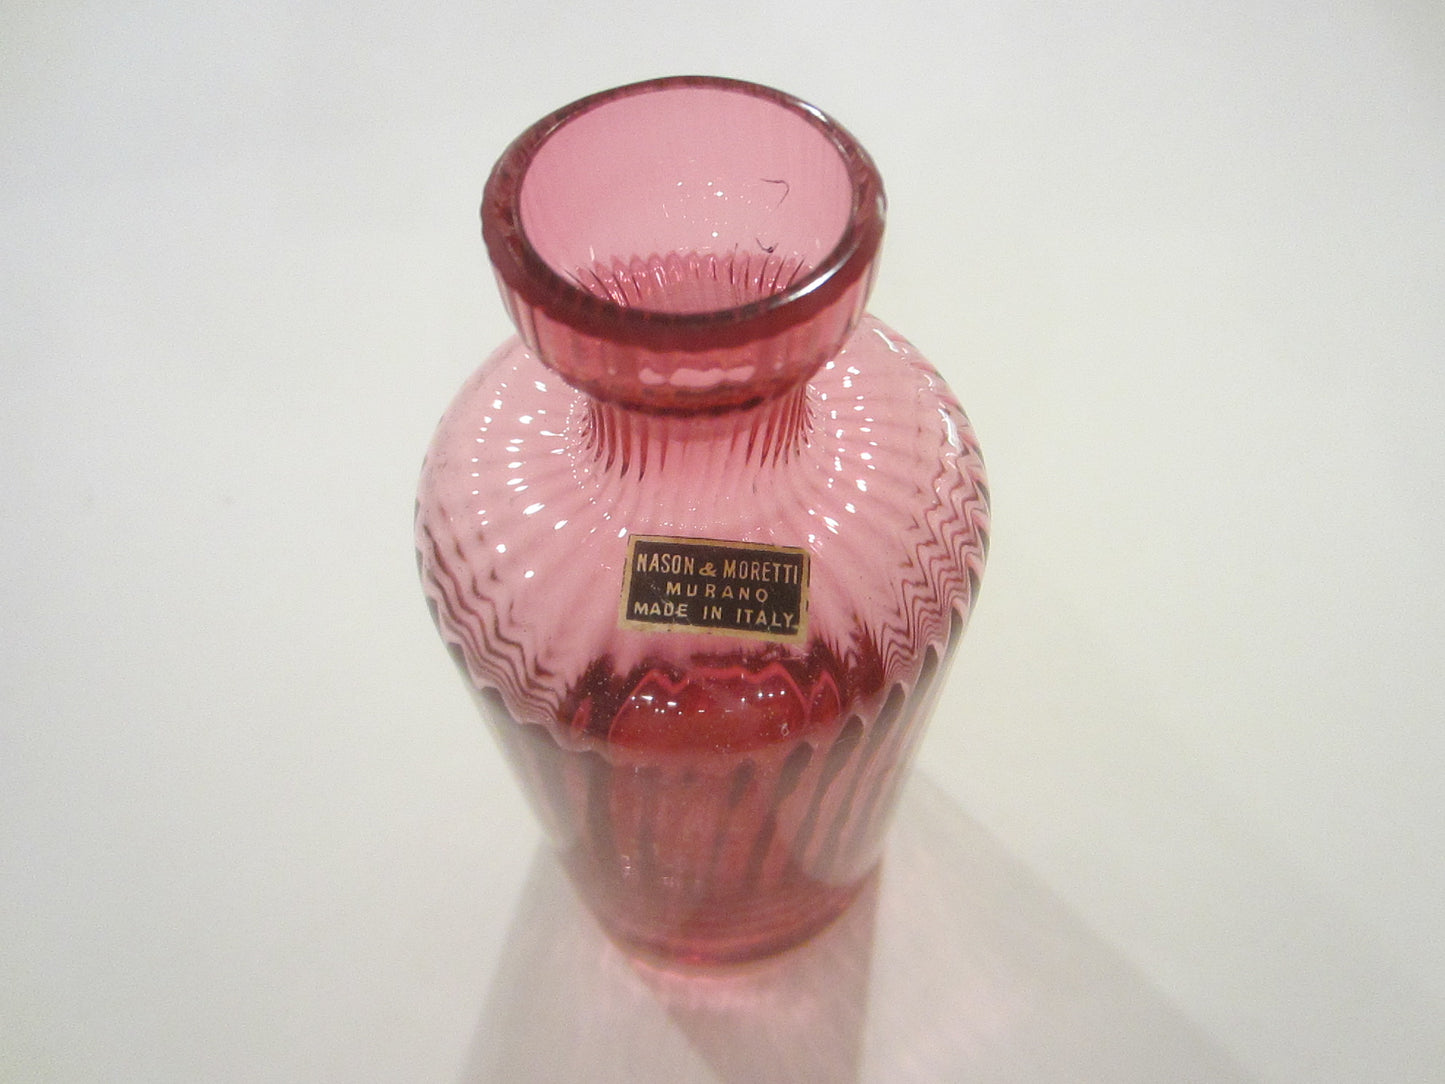 Nason Moretti Murano Pink Glass Mini Carafe Made in Italy